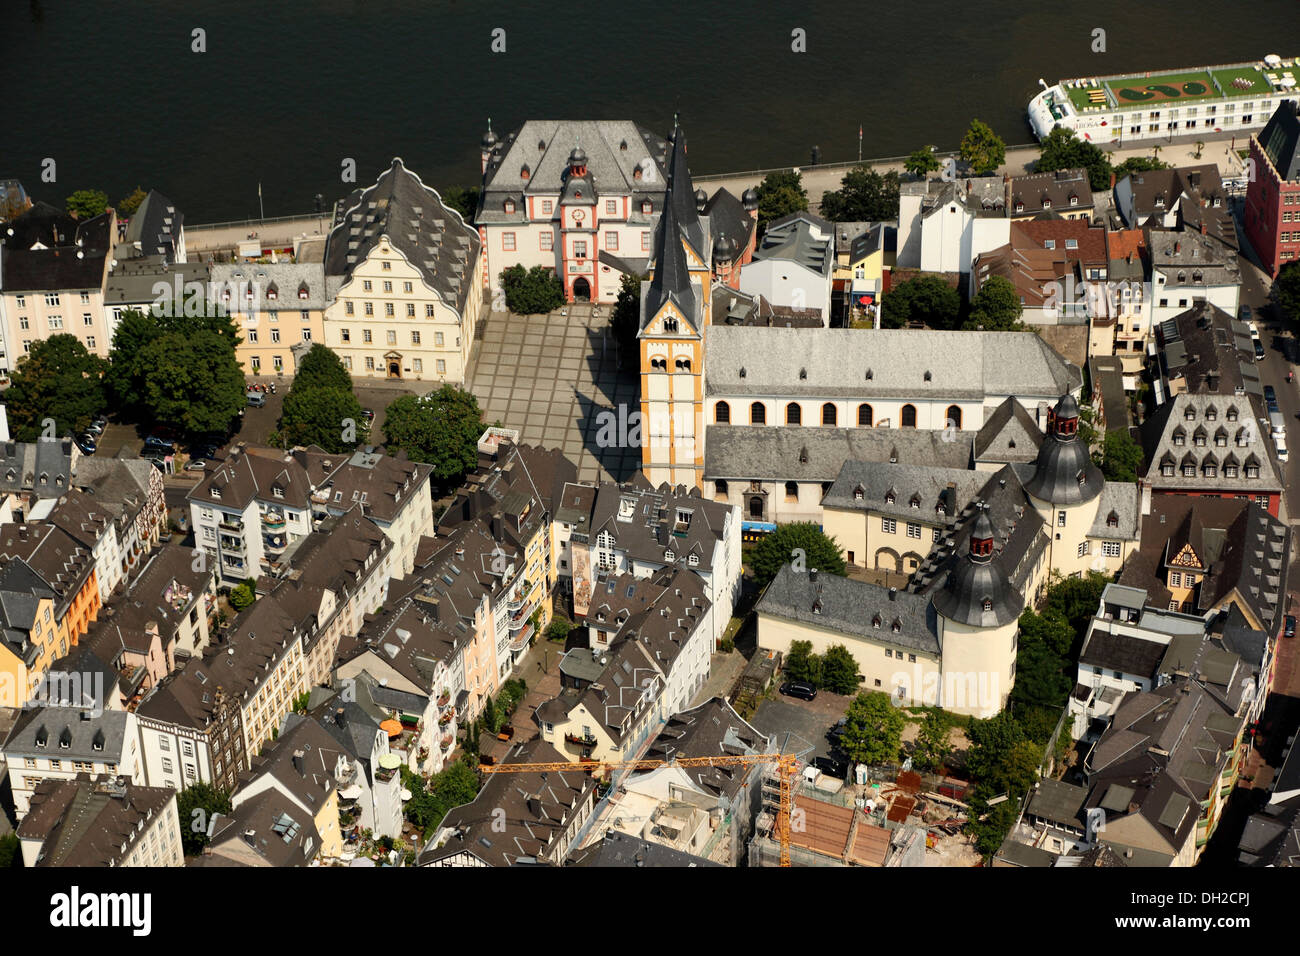 Luftaufnahme, historischen Stadtteil von Koblenz mit quadratischen Florinsmarkt und Florinskirche Kirche, Koblenz, Rheinland-Pfalz Stockfoto